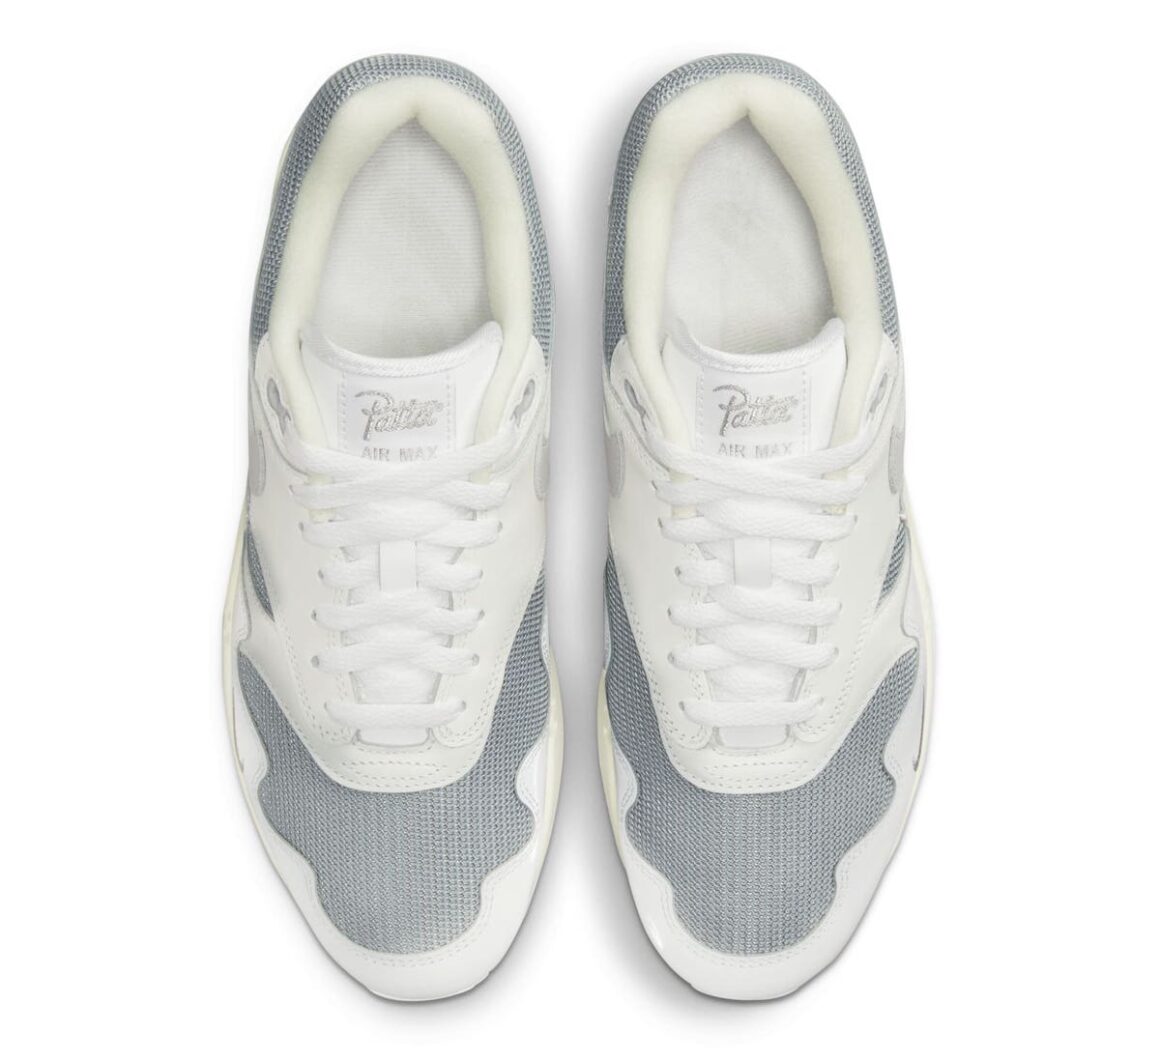 Patta-Nike-Air-Max-1-White-Grey-DQ0299-100 Toebox Top